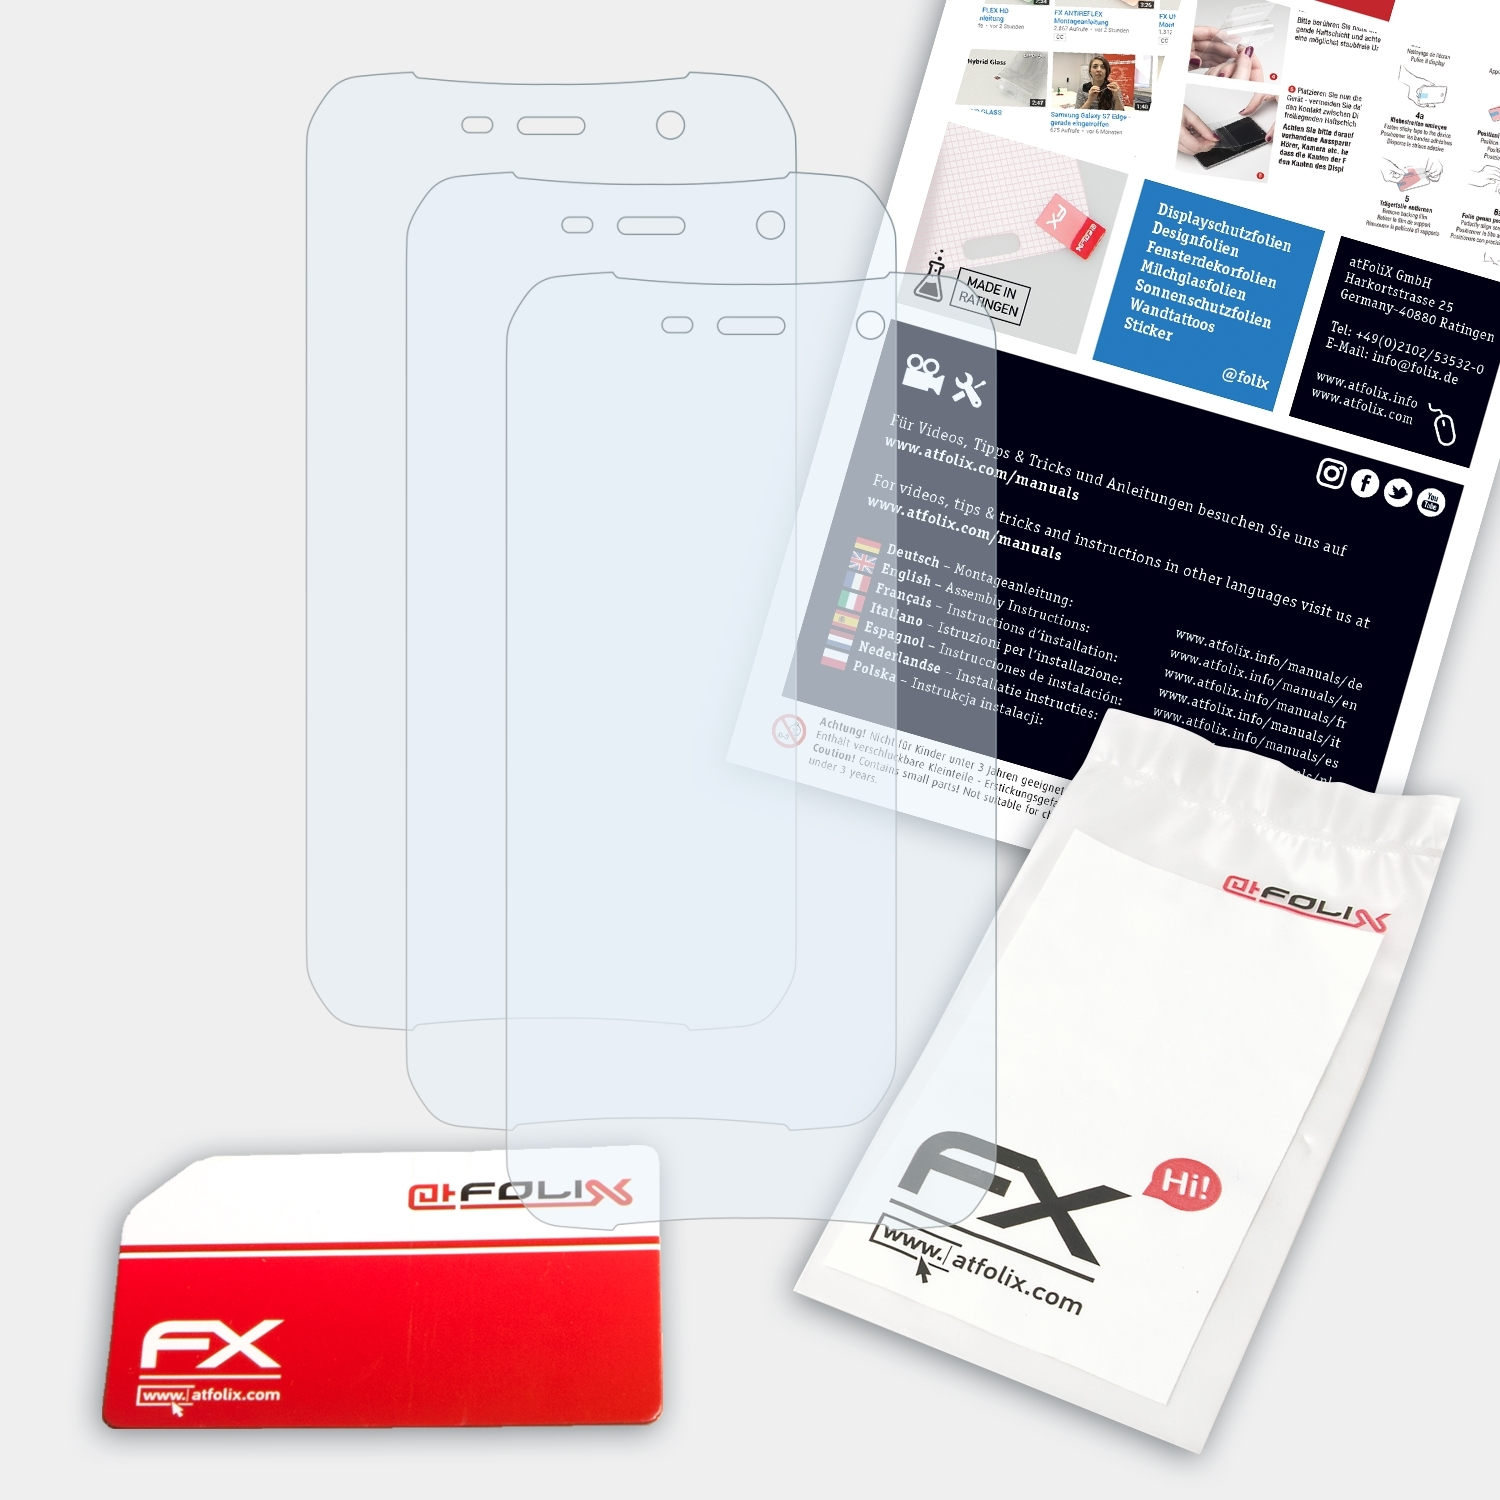 S35) FX-Clear ATFOLIX Doogee 3x Displayschutz(für